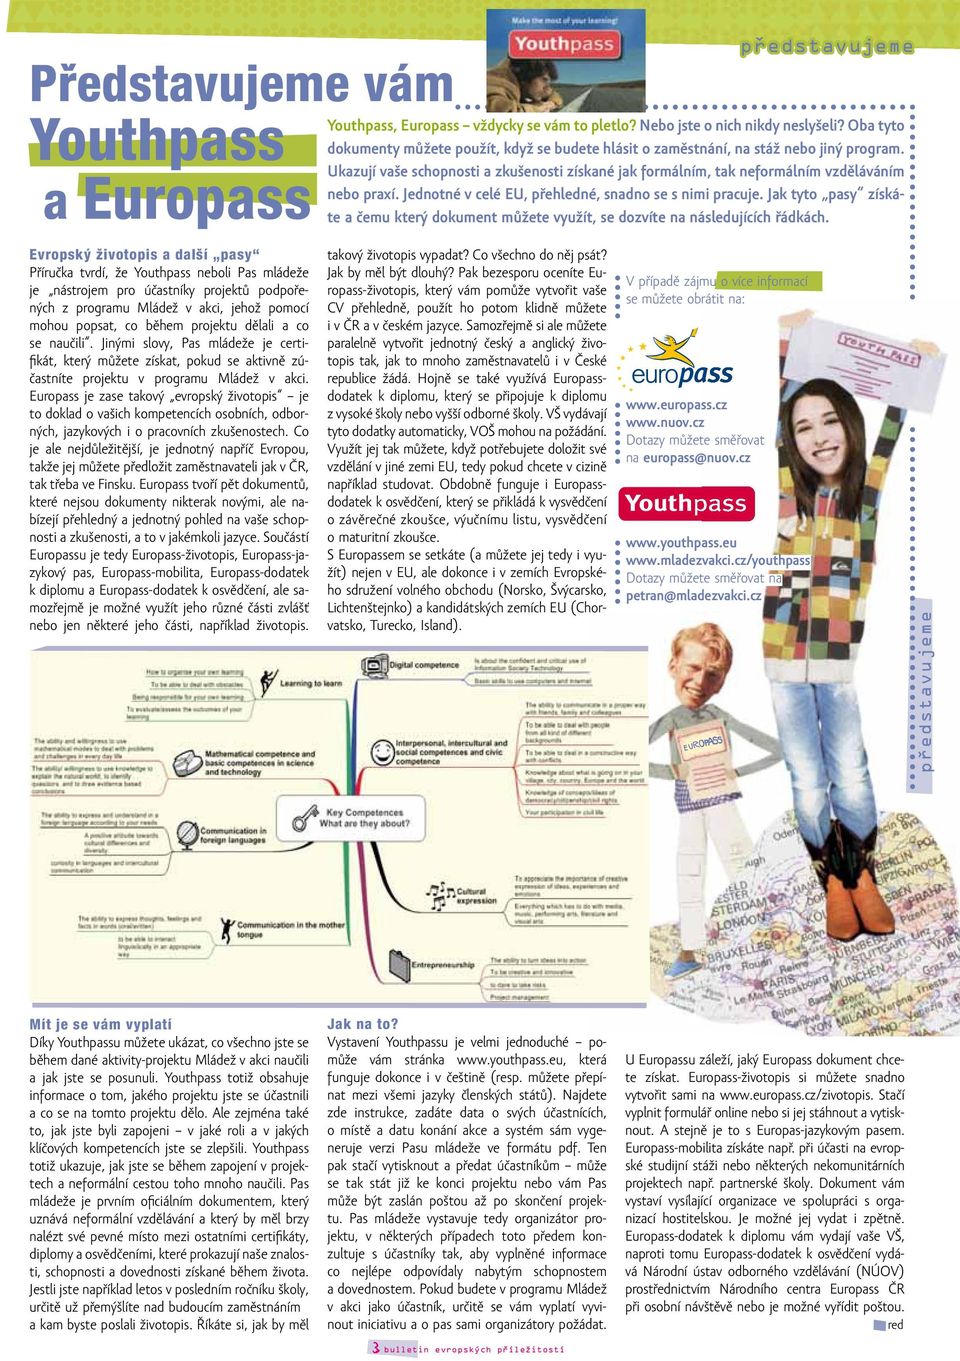 Europass je zase takový evropský životopis je to doklad o vašich kompetencích osobních, odborných, jazykových i o pracovních zkušenostech.